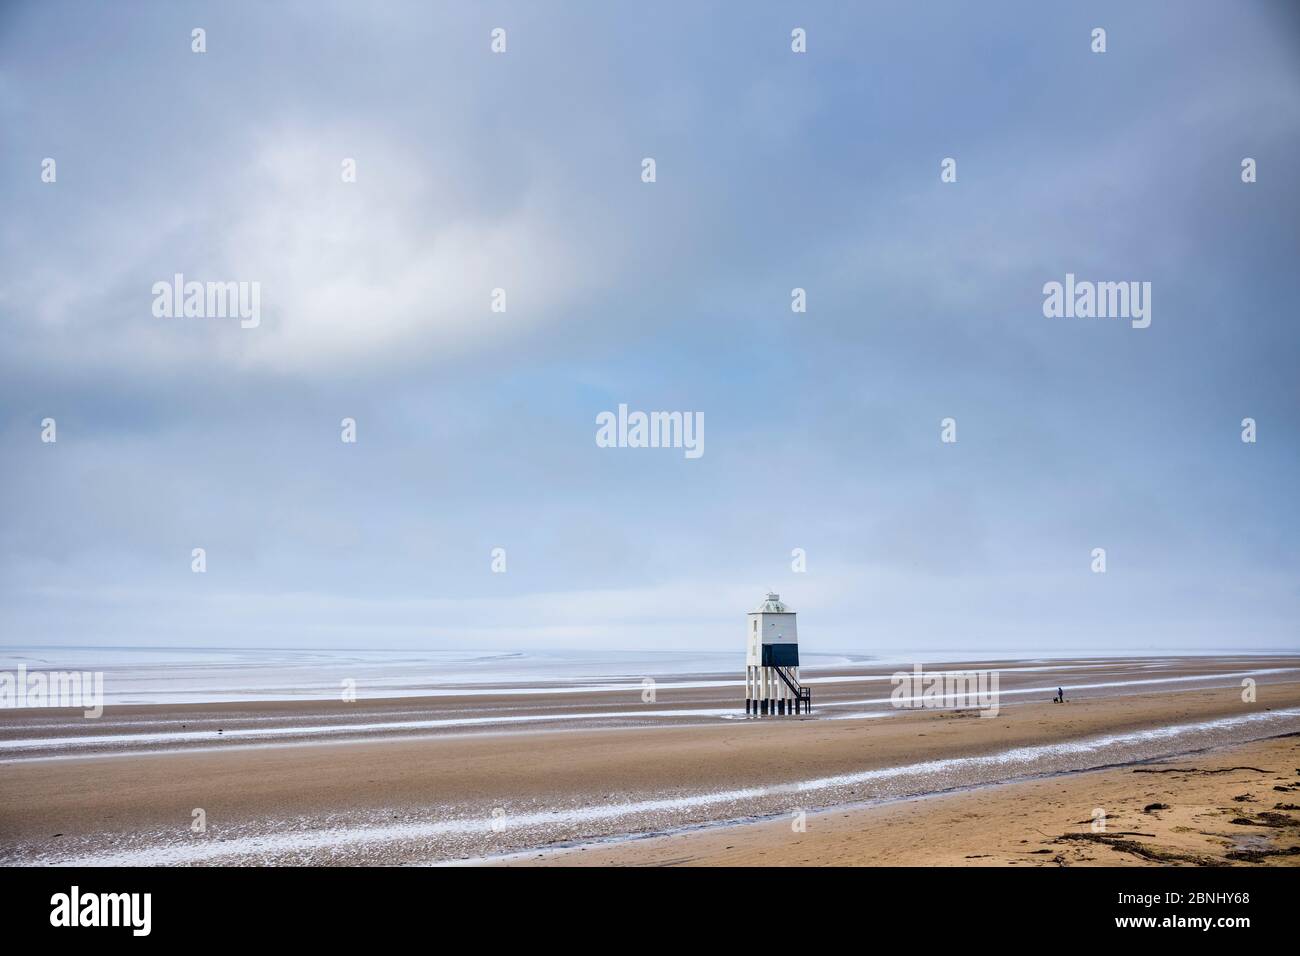 Eine Person, die Hunde entlang des Sandstrandes der Küste entlang läuft und die Einsamkeit am Bristol Channel in Burnham-on-Sea, Somerset, Großbritannien, genießt Stockfoto